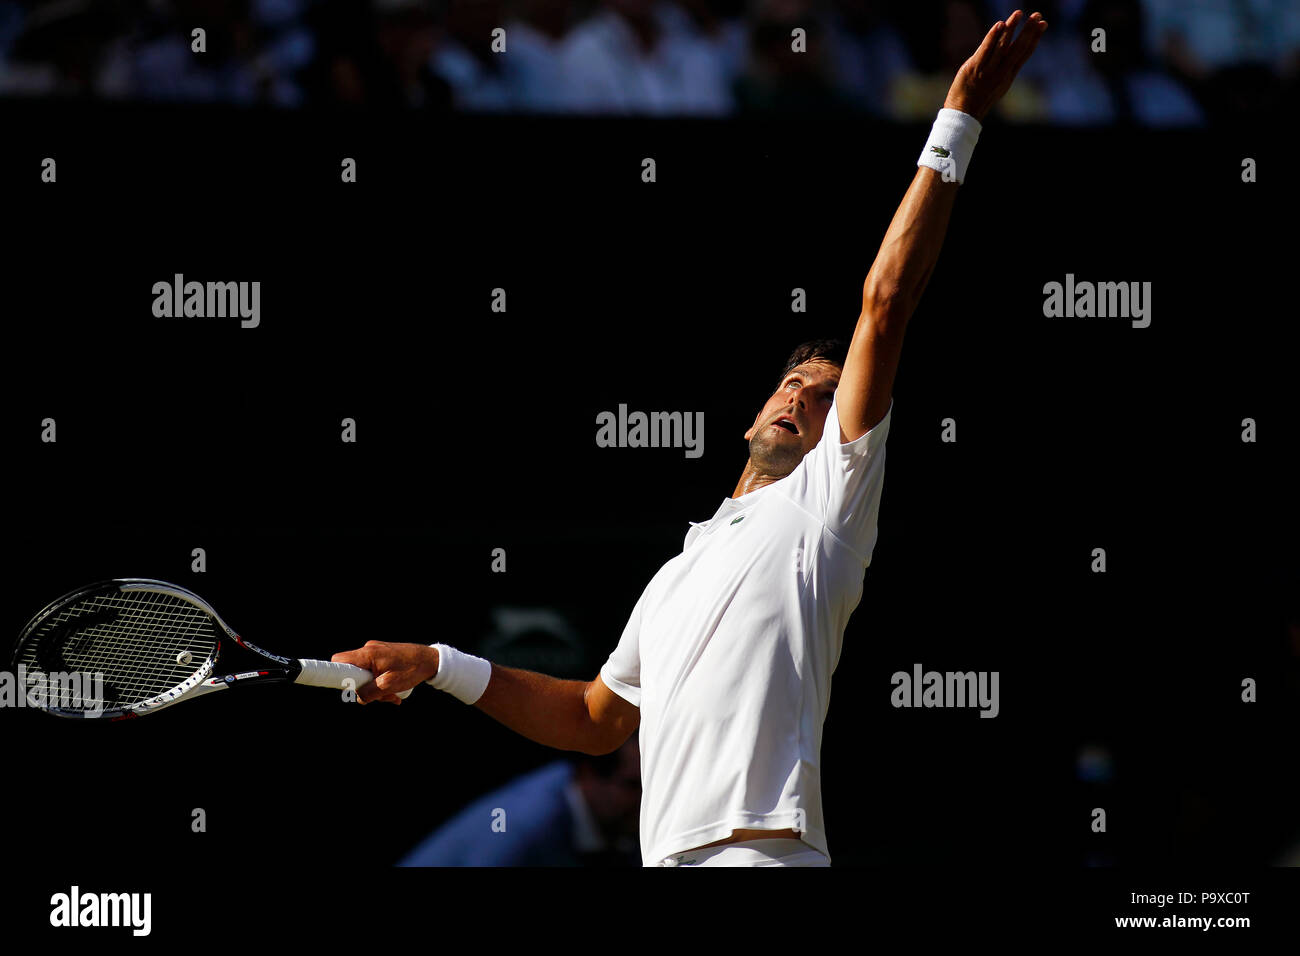 London, England - Juli 7, 2018. Wimbledon Tennis: Novak Djokovic während seiner dritten Runde Spiel gegen Großbritanniens Kyle Edmund auf dem Center Court in Wimbledon. Stockfoto